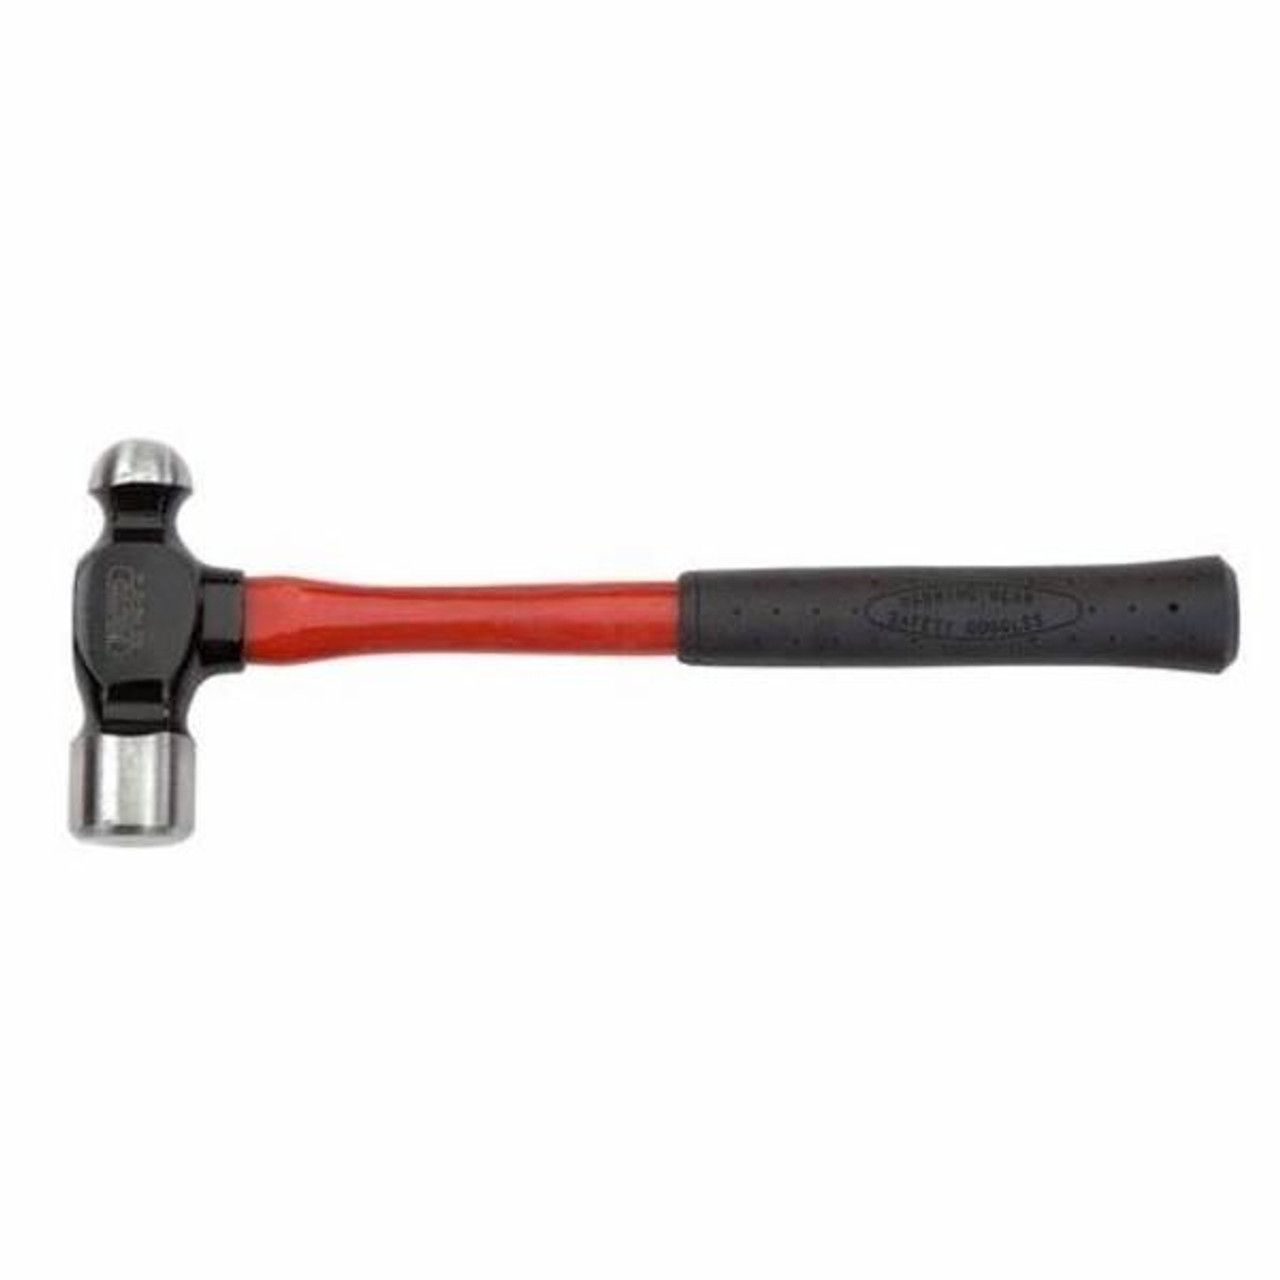 FS432 Fiberglass 32 OZ Ball Pein Hammer